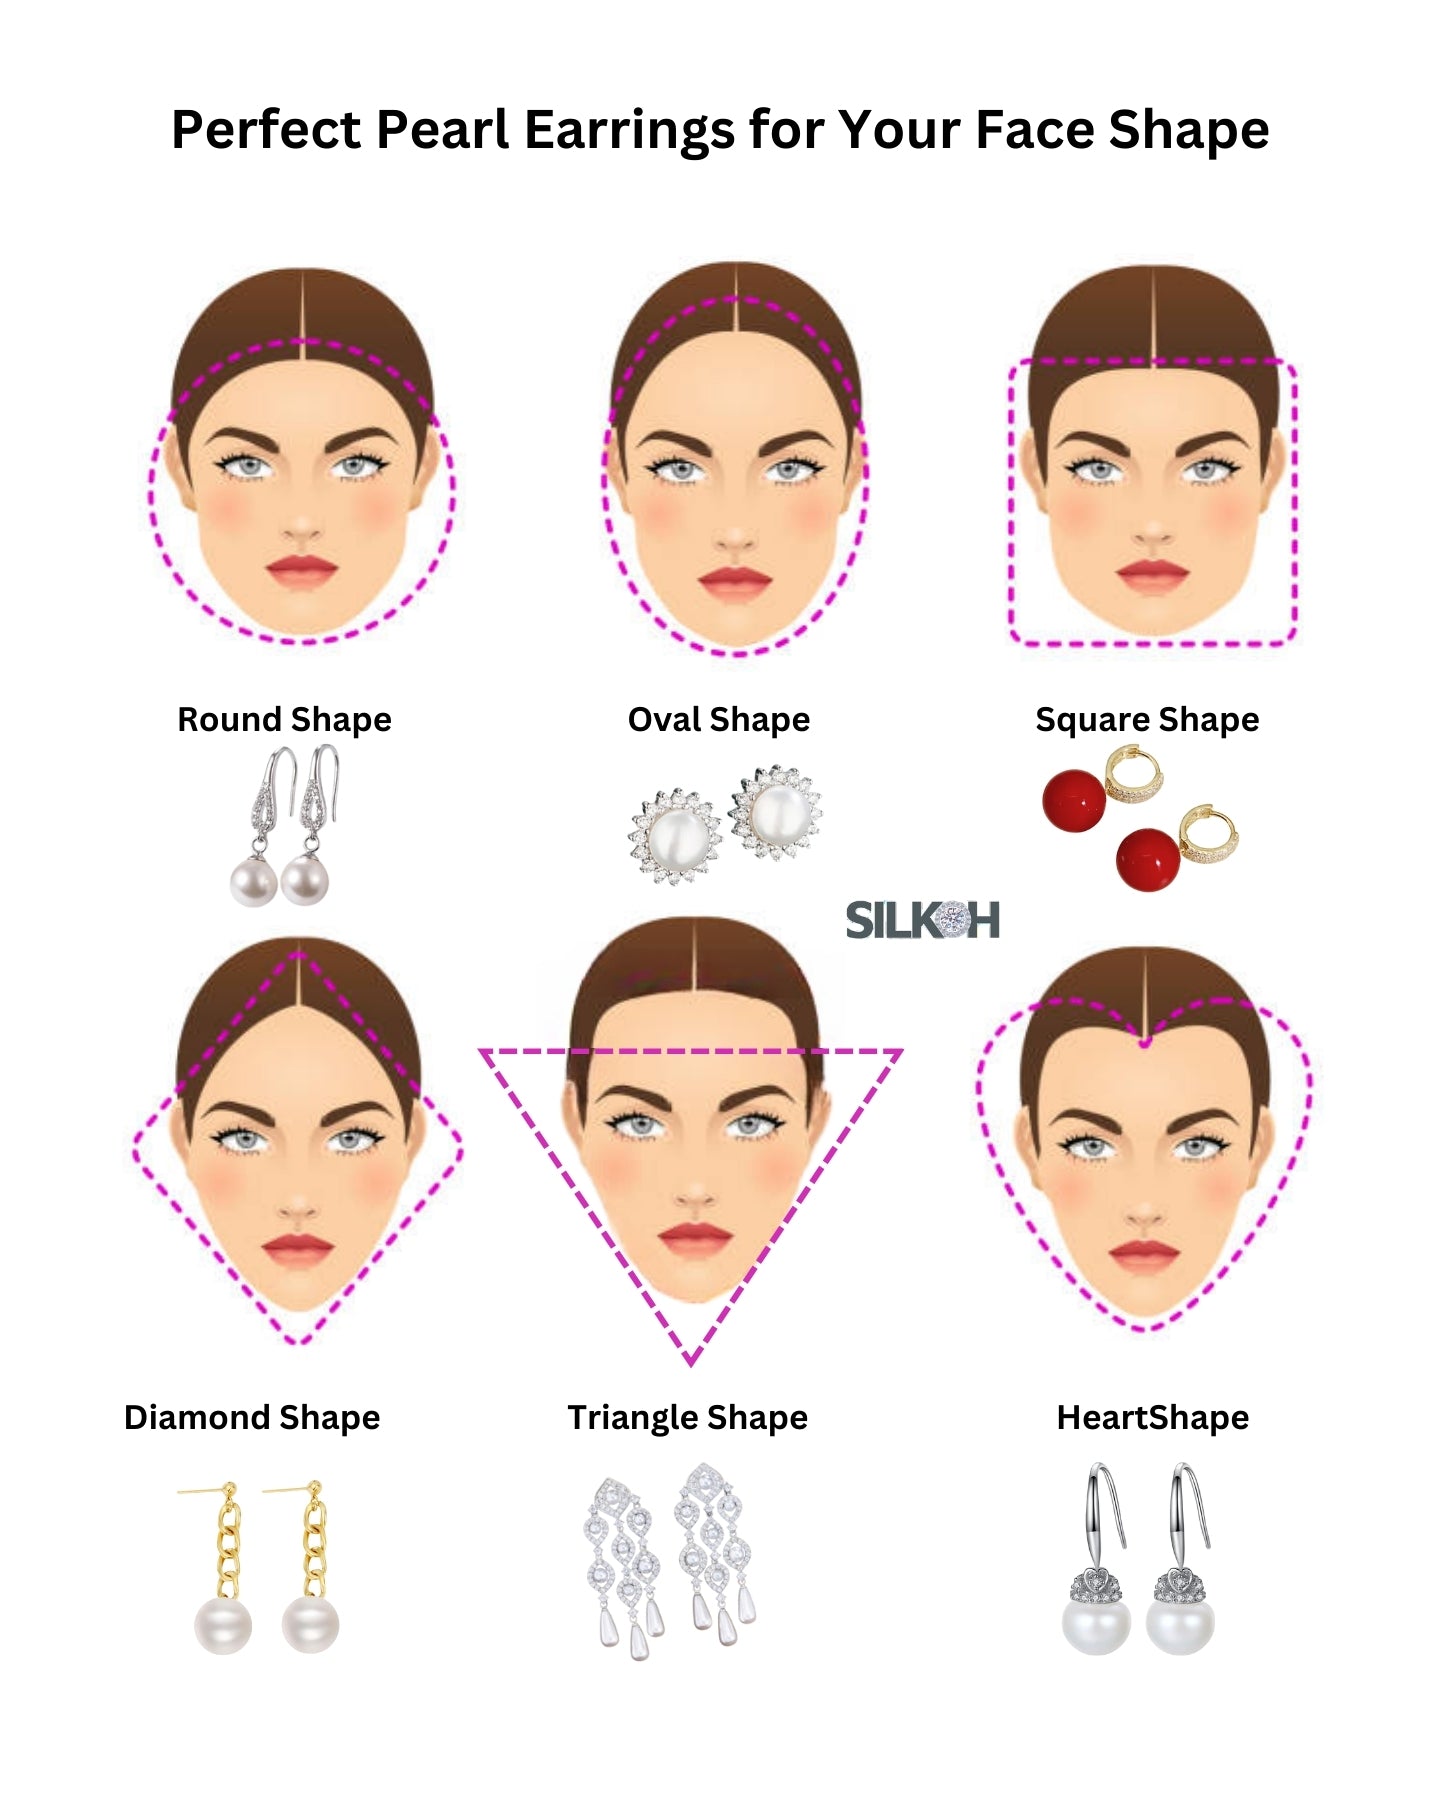 Tipps zur Auswahl der perfekten Perlenohrringe für Ihre Gesichtsform